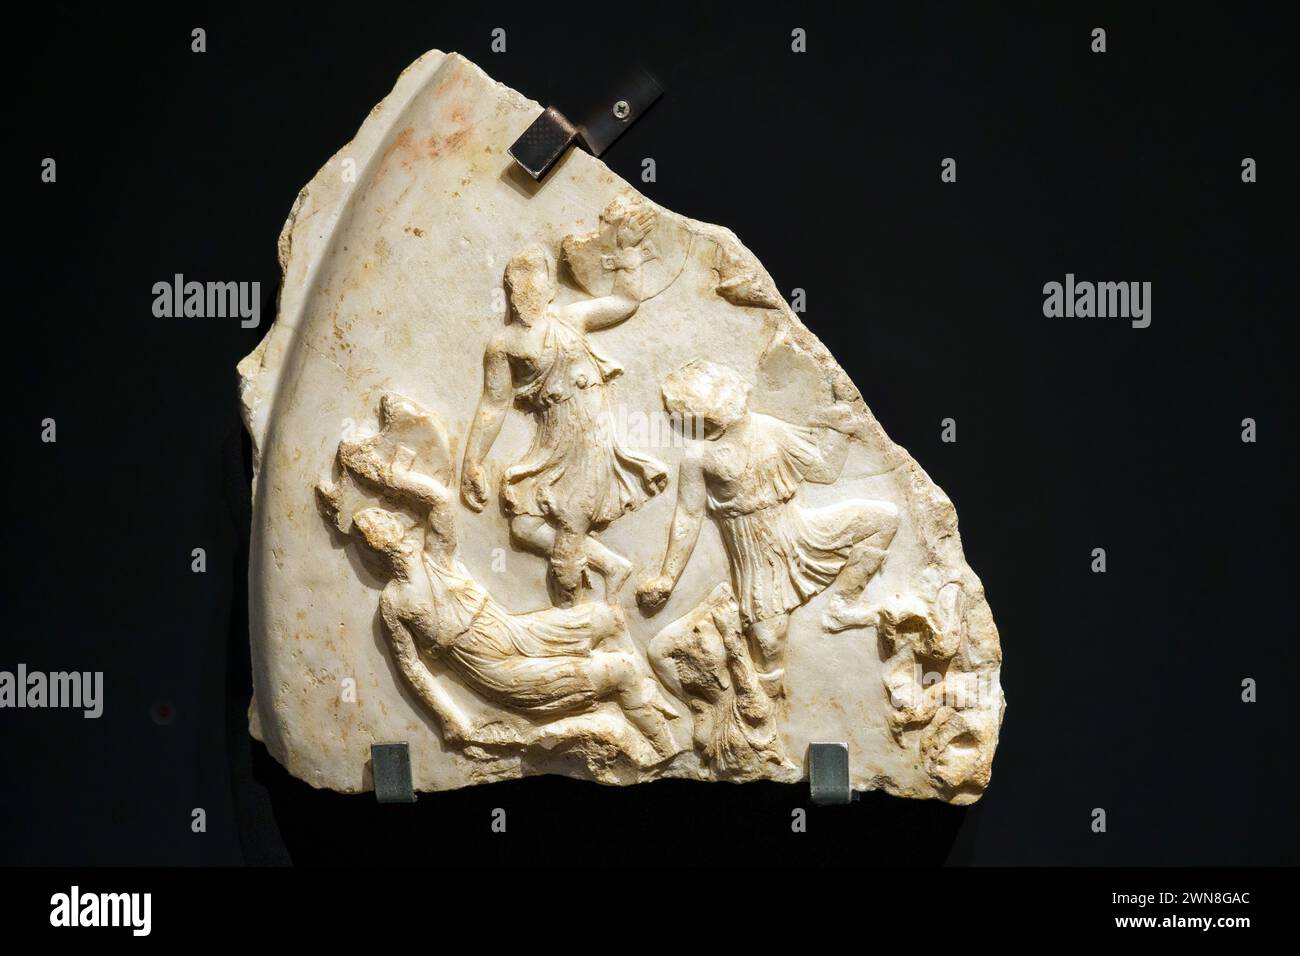 Fragment eines Schildes von Athena Parthenos, Herkunft unbekannt - Pentelismarmor, erste Hälfte des 1. Jahrhunderts n. Chr. - Vatikanmuseum, Vatikanstadt Stockfoto